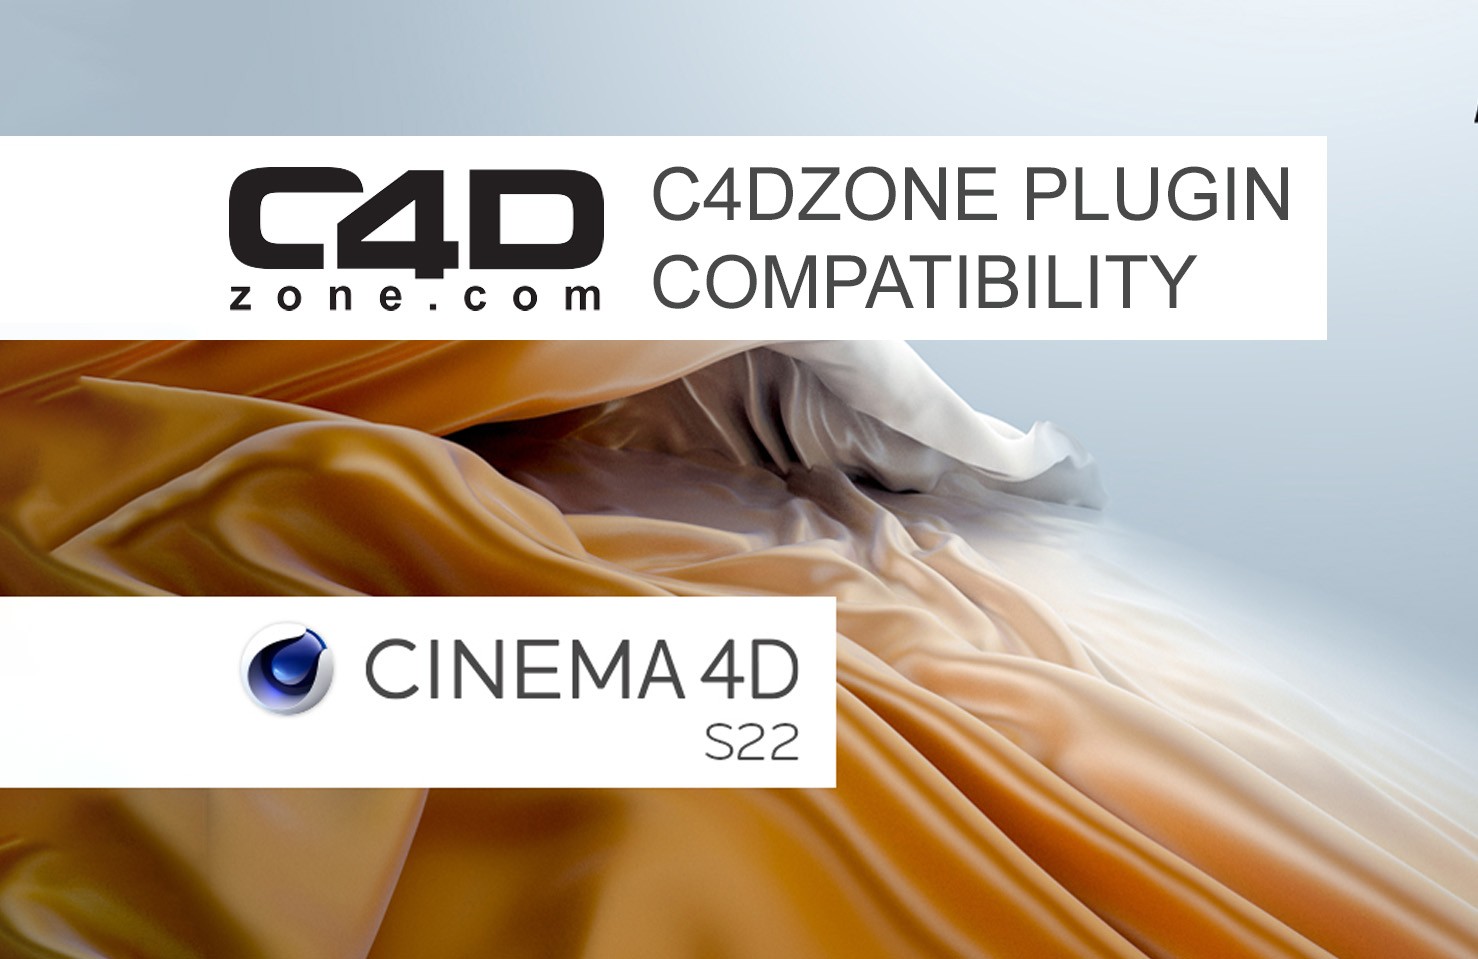 C4Dzone Plugin and S22